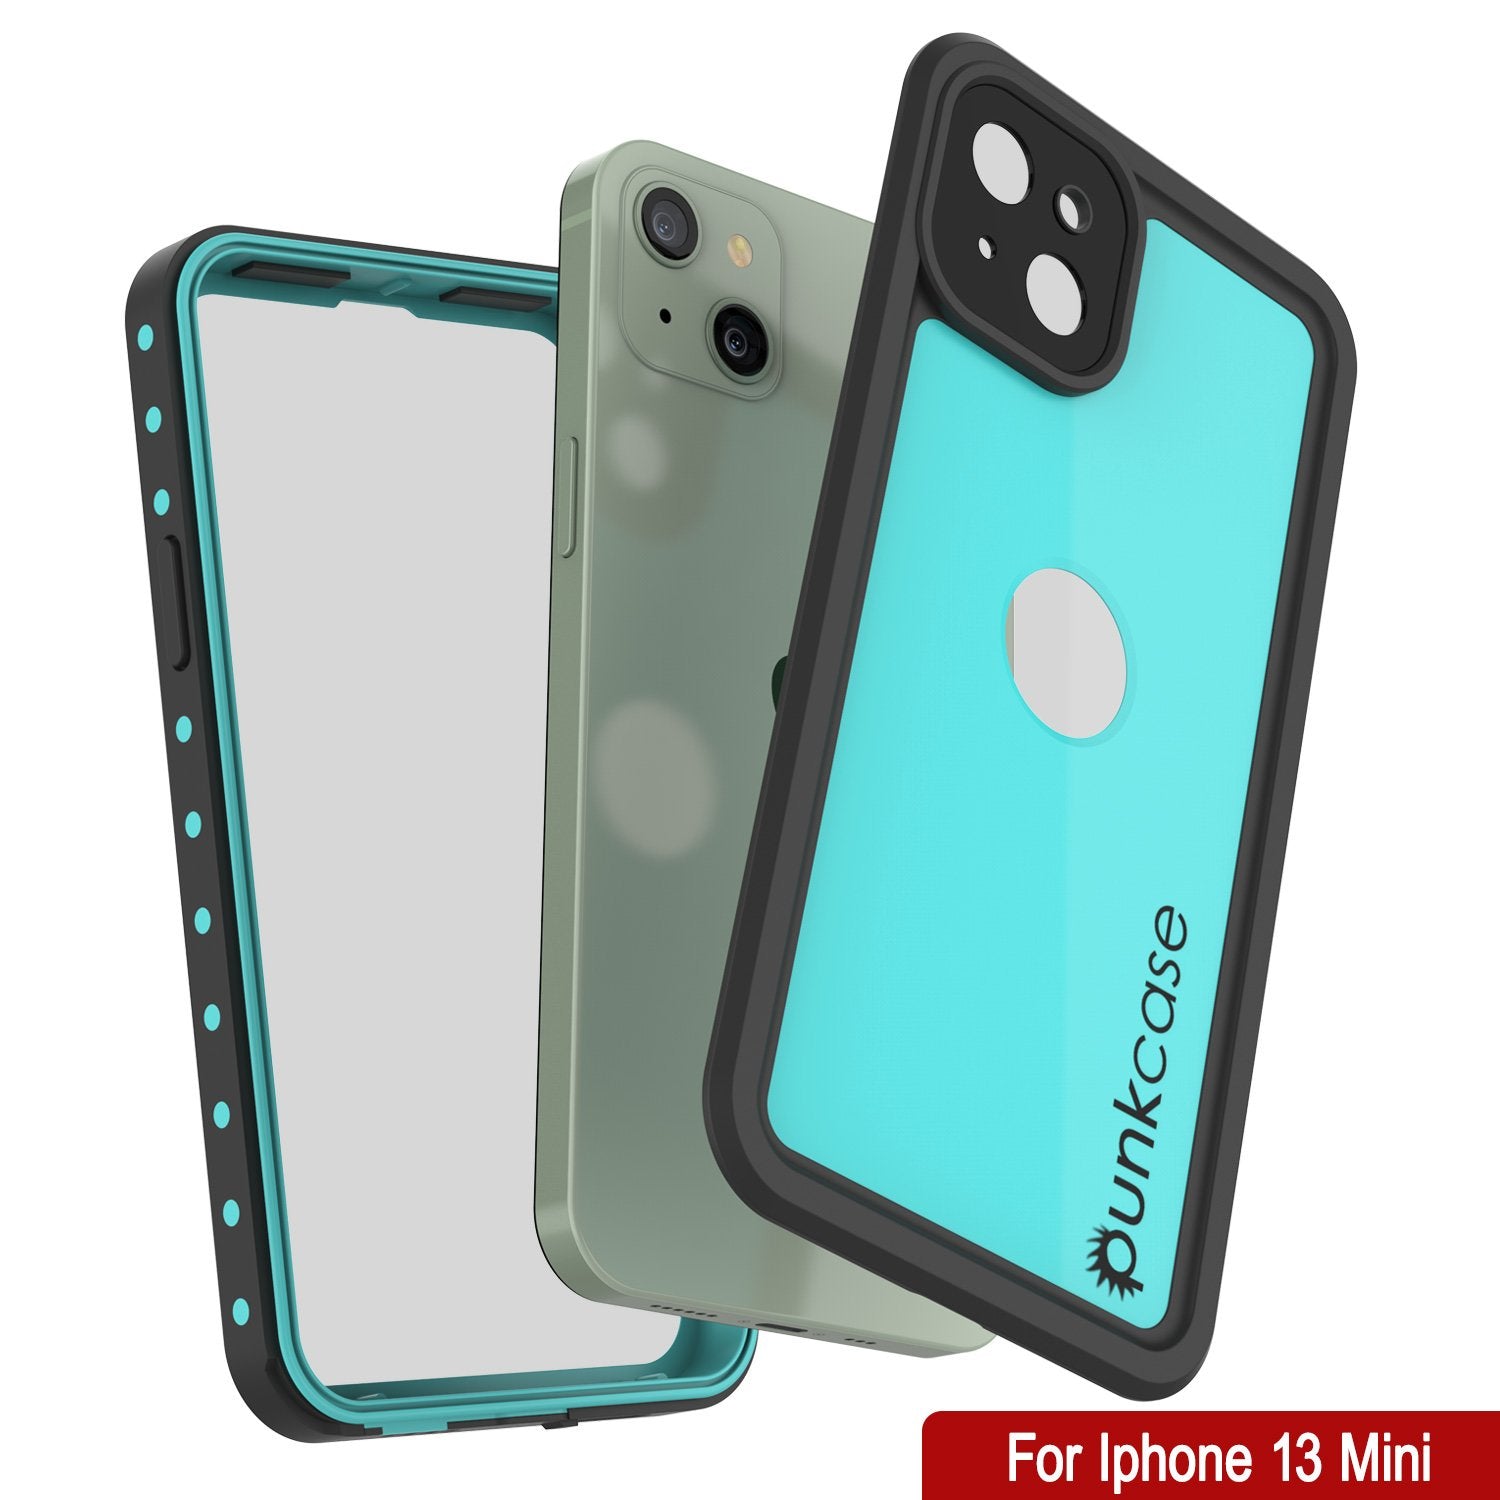 iPhone 13 Mini Waterproof IP68 Case, Punkcase [Teal] [StudStar Series] [Slim Fit]